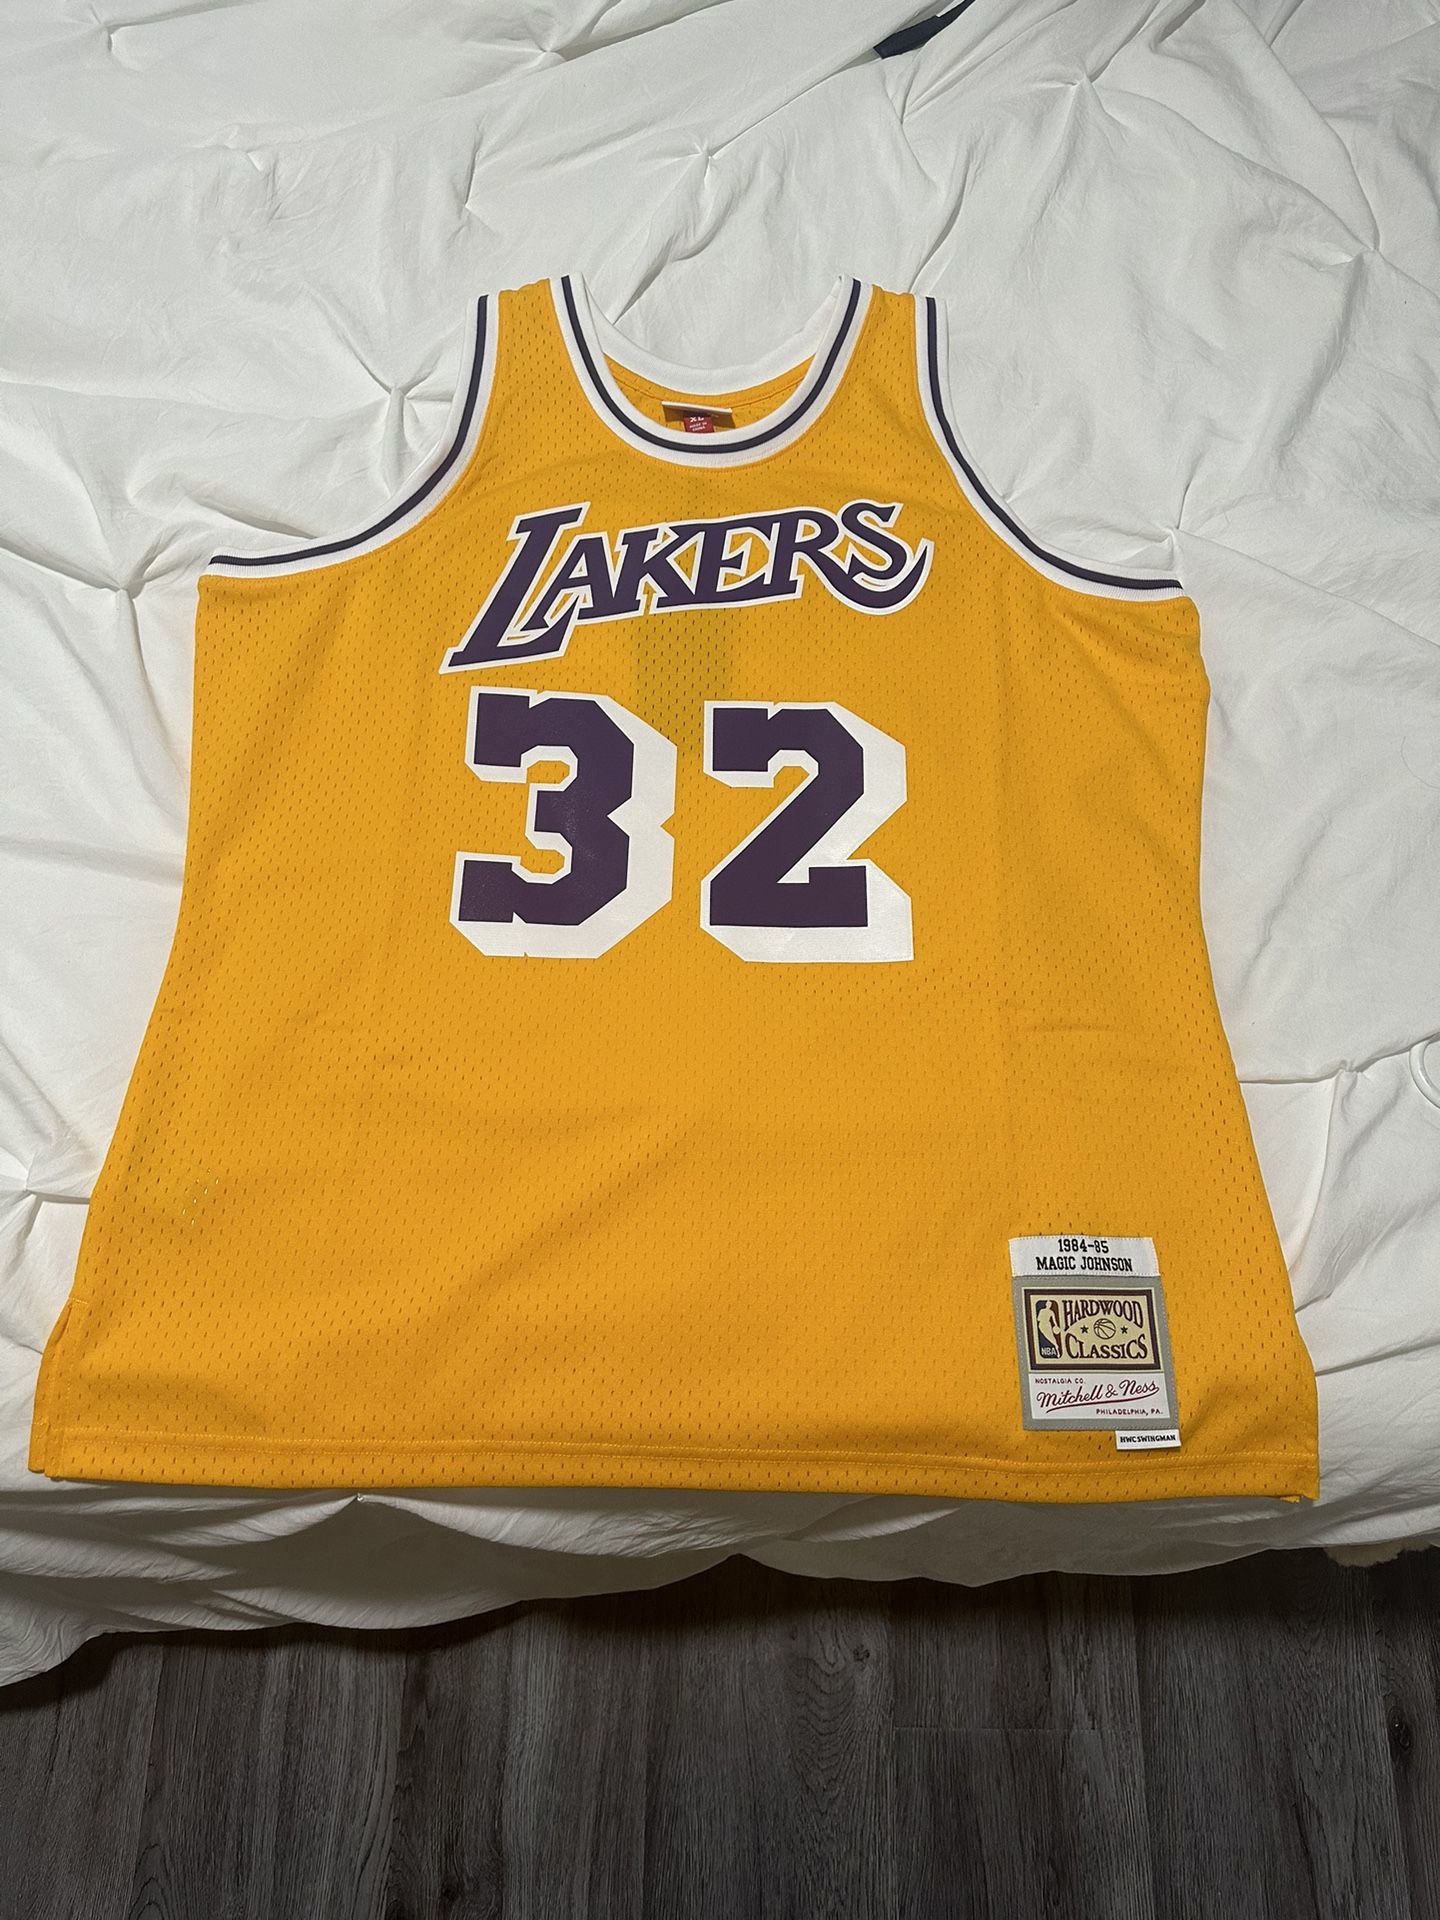 Lakers Magic Johnson jersey